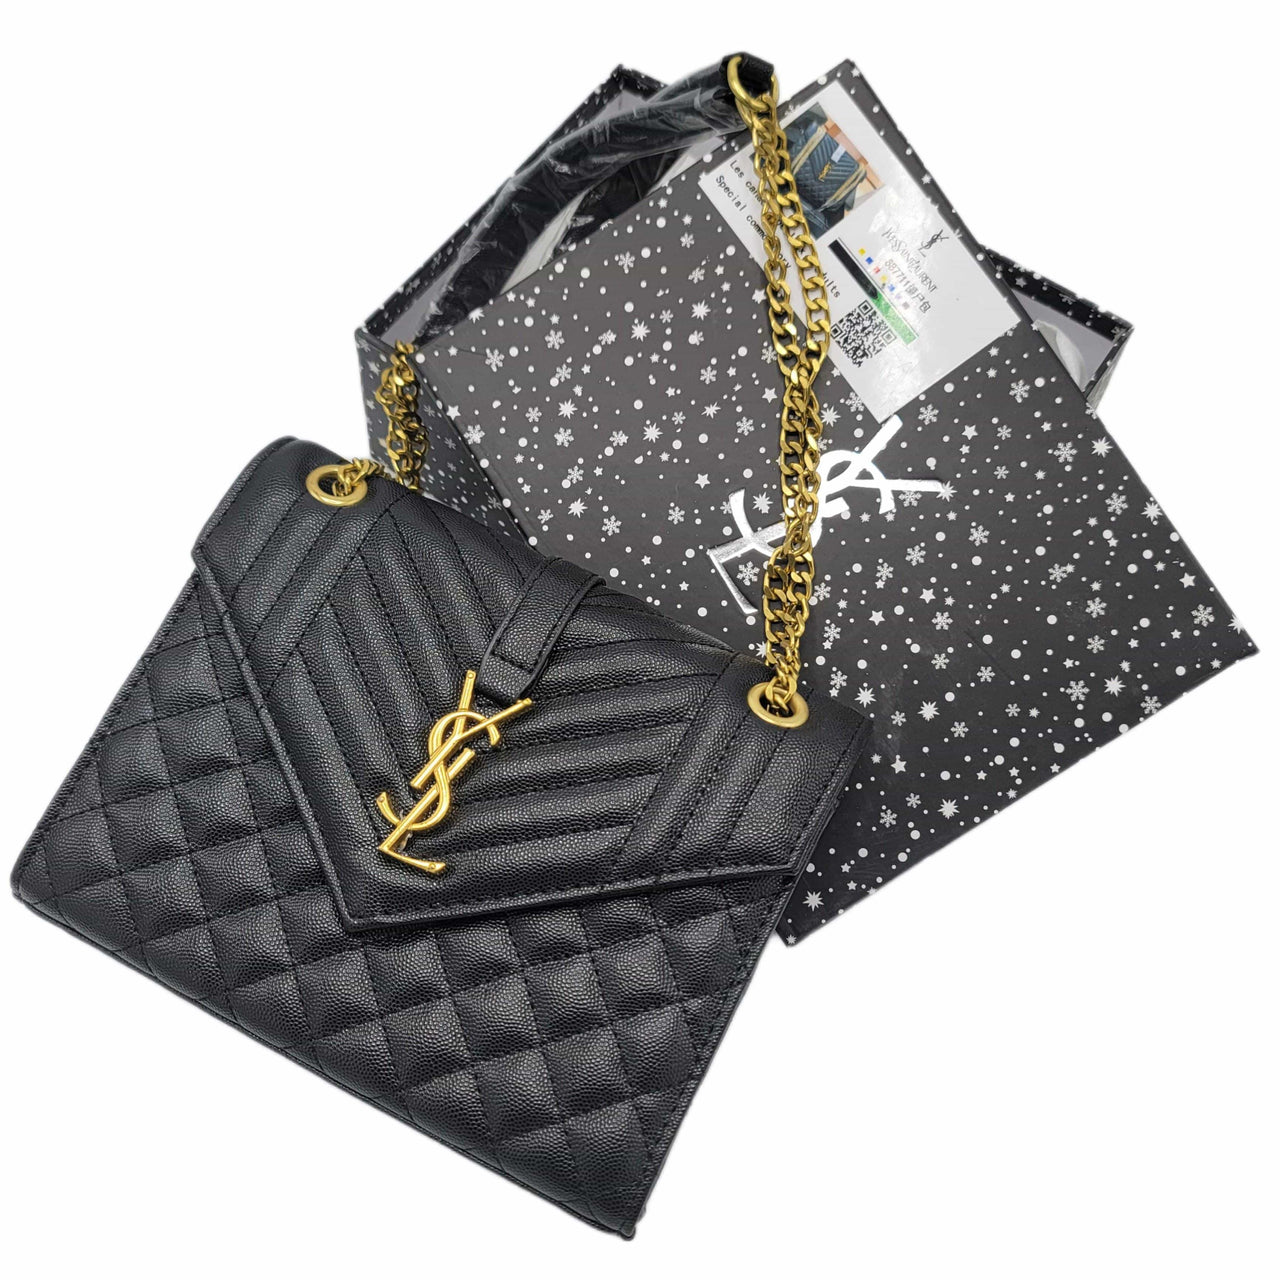 The Bag Couture Handbags, Wallets & Cases YSL Shoulder Bag BG